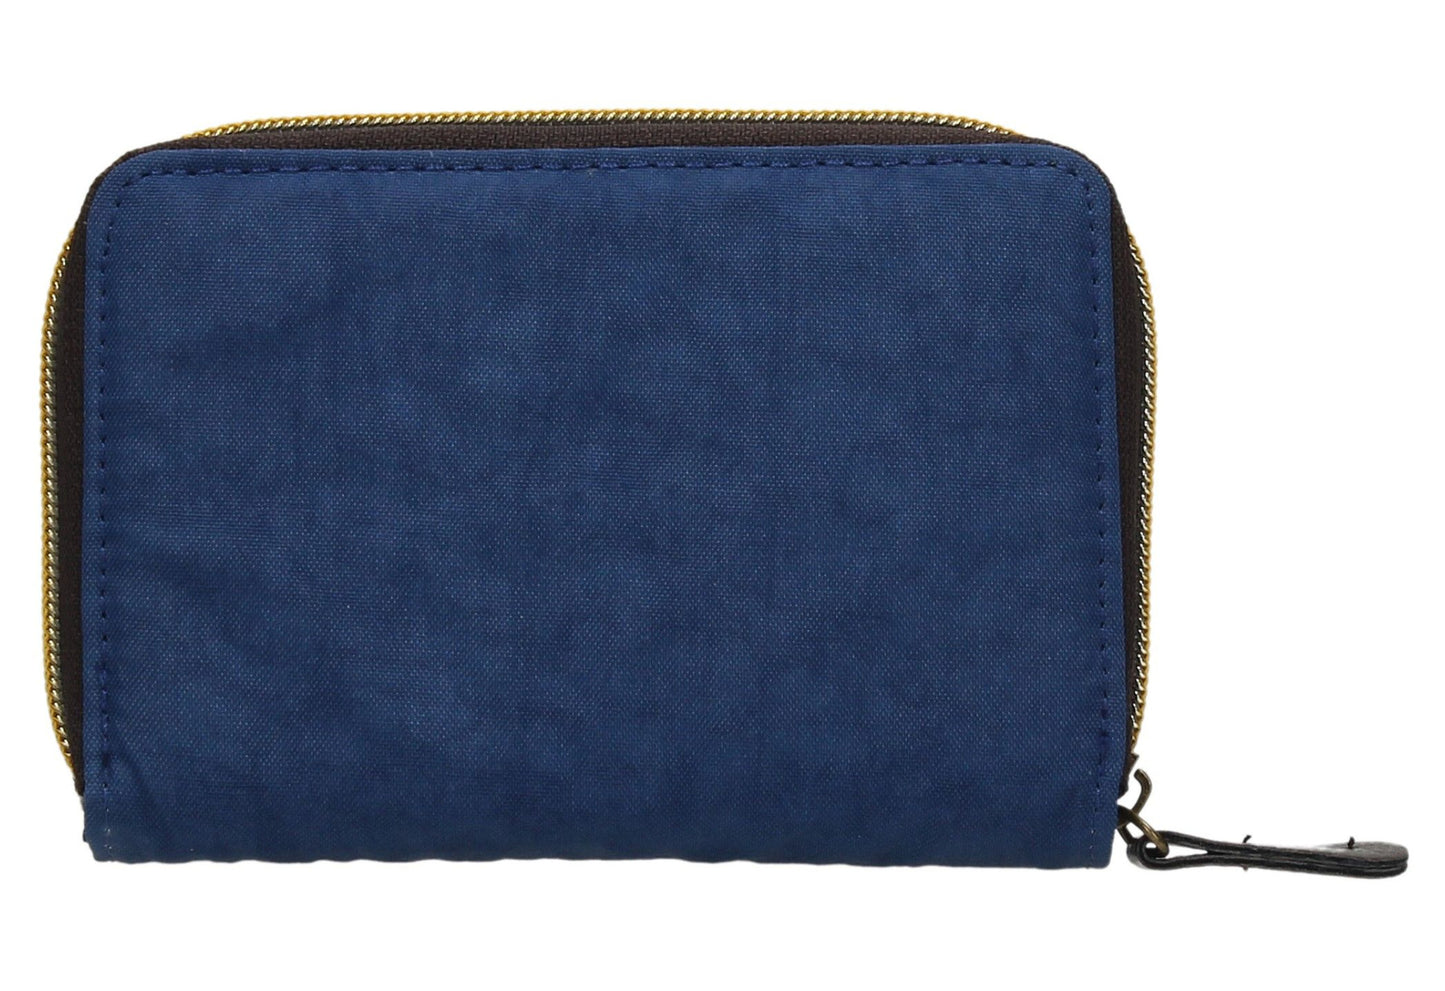 Swanky Swank Riley Nylon Bi-fold Purse Dark BlueCheap Cute School Wallets Purses Bags Animal